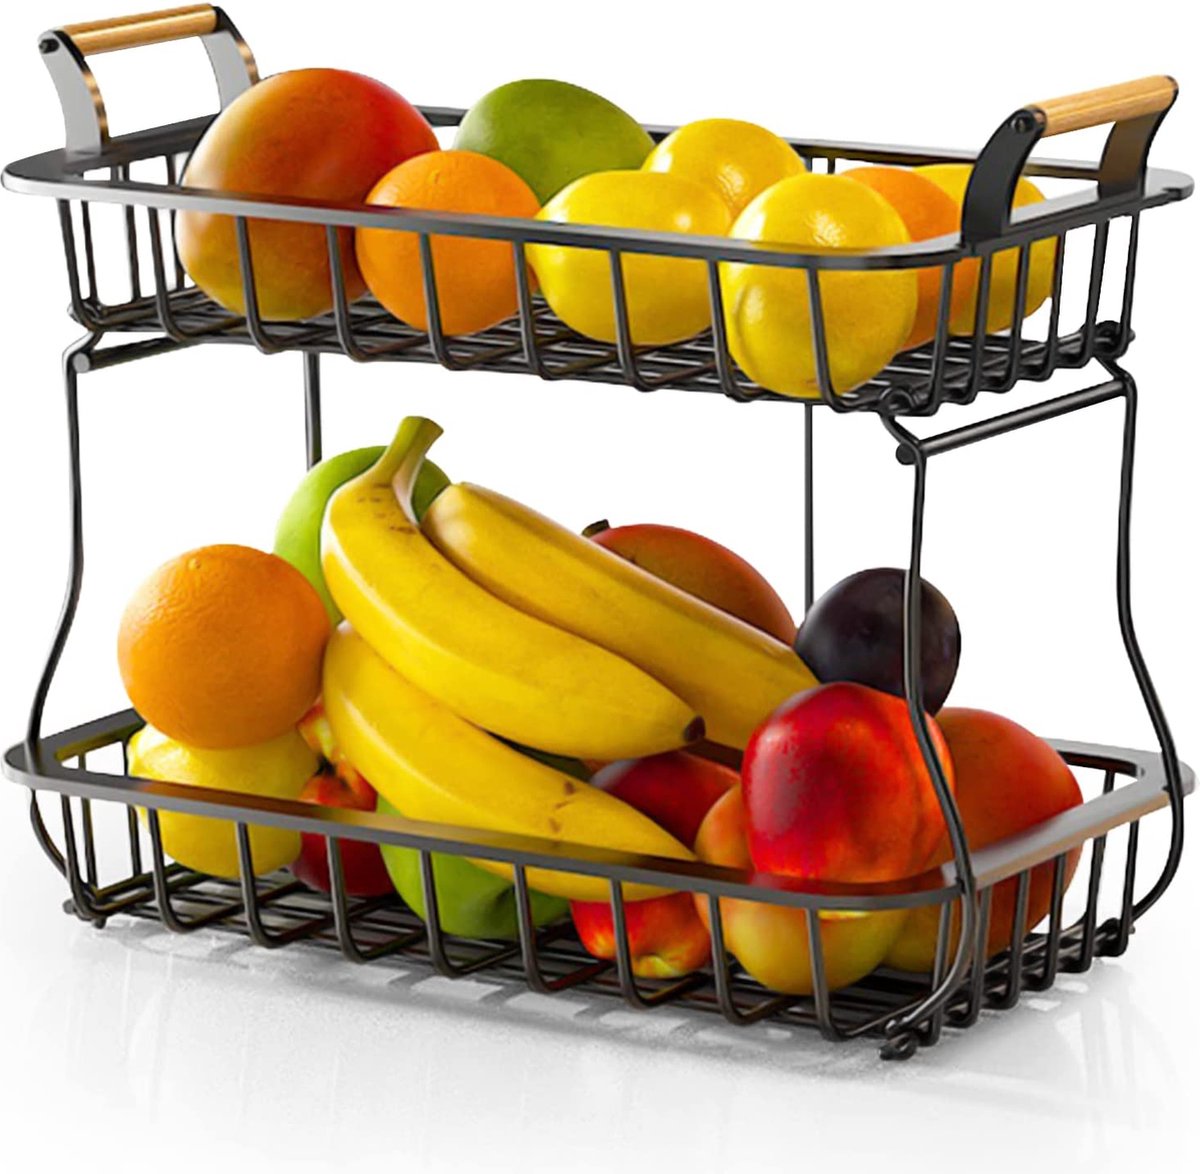 Fruitmand met 2 niveaus,groenterek,Fruit-etagère,etalen fruitschaal voor vers fruit en Groenten,Moderne Fruitschaal,Praktisch, voor Dagelijks gebruik in de Keuken,Zwart